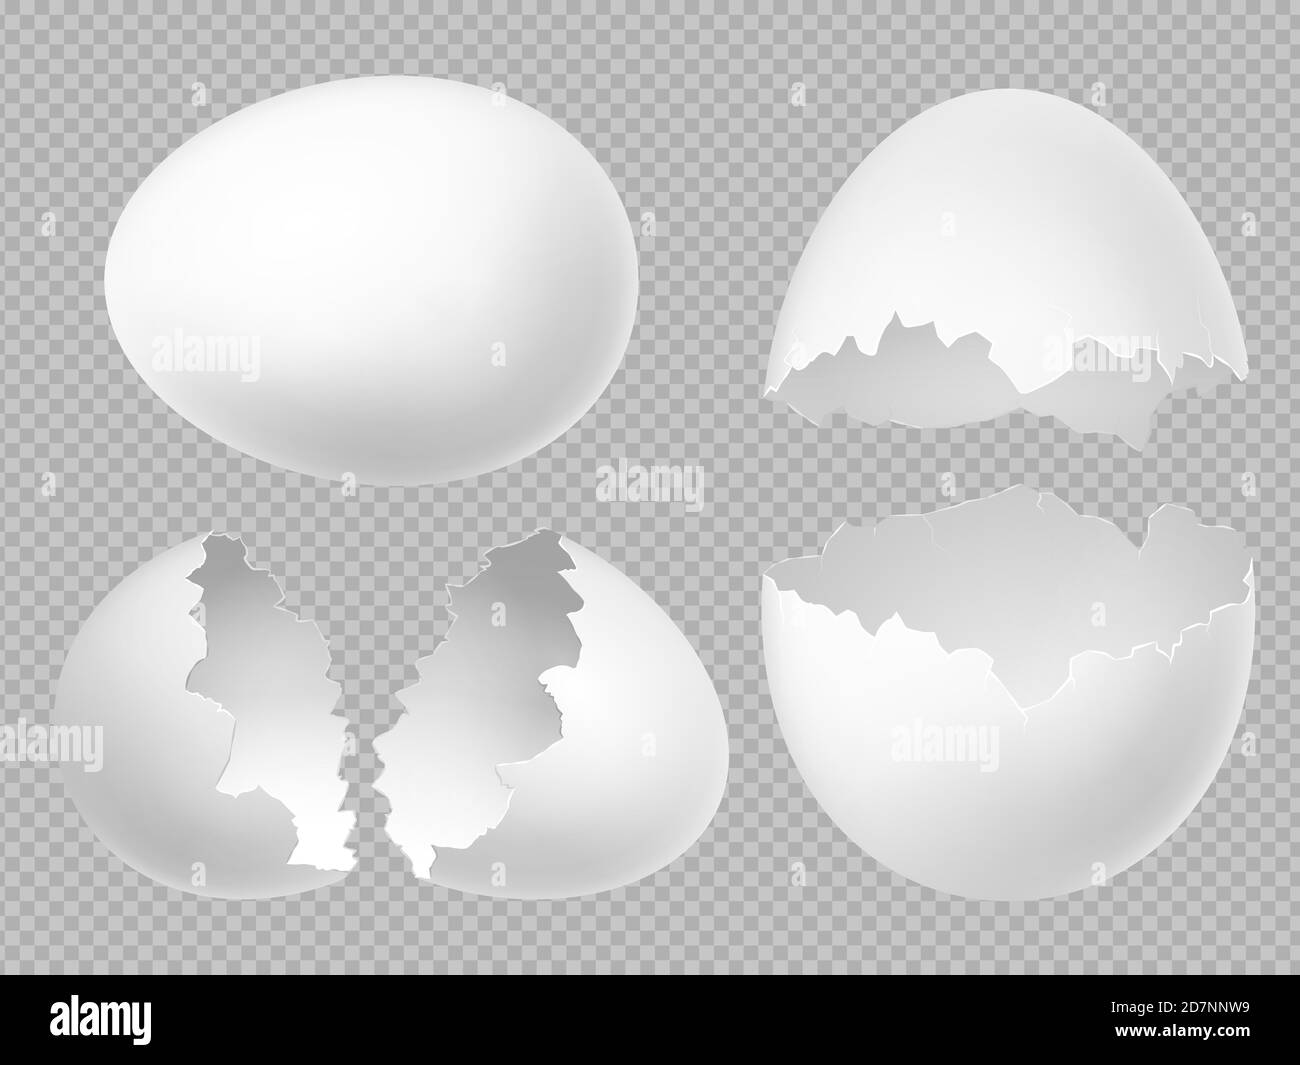 Œufs blancs vectoriels réalistes avec œufs entiers et cassés isolés sur fond transparent. Illustration de coquille d'œuf, coquille d'œuf cassé Illustration de Vecteur